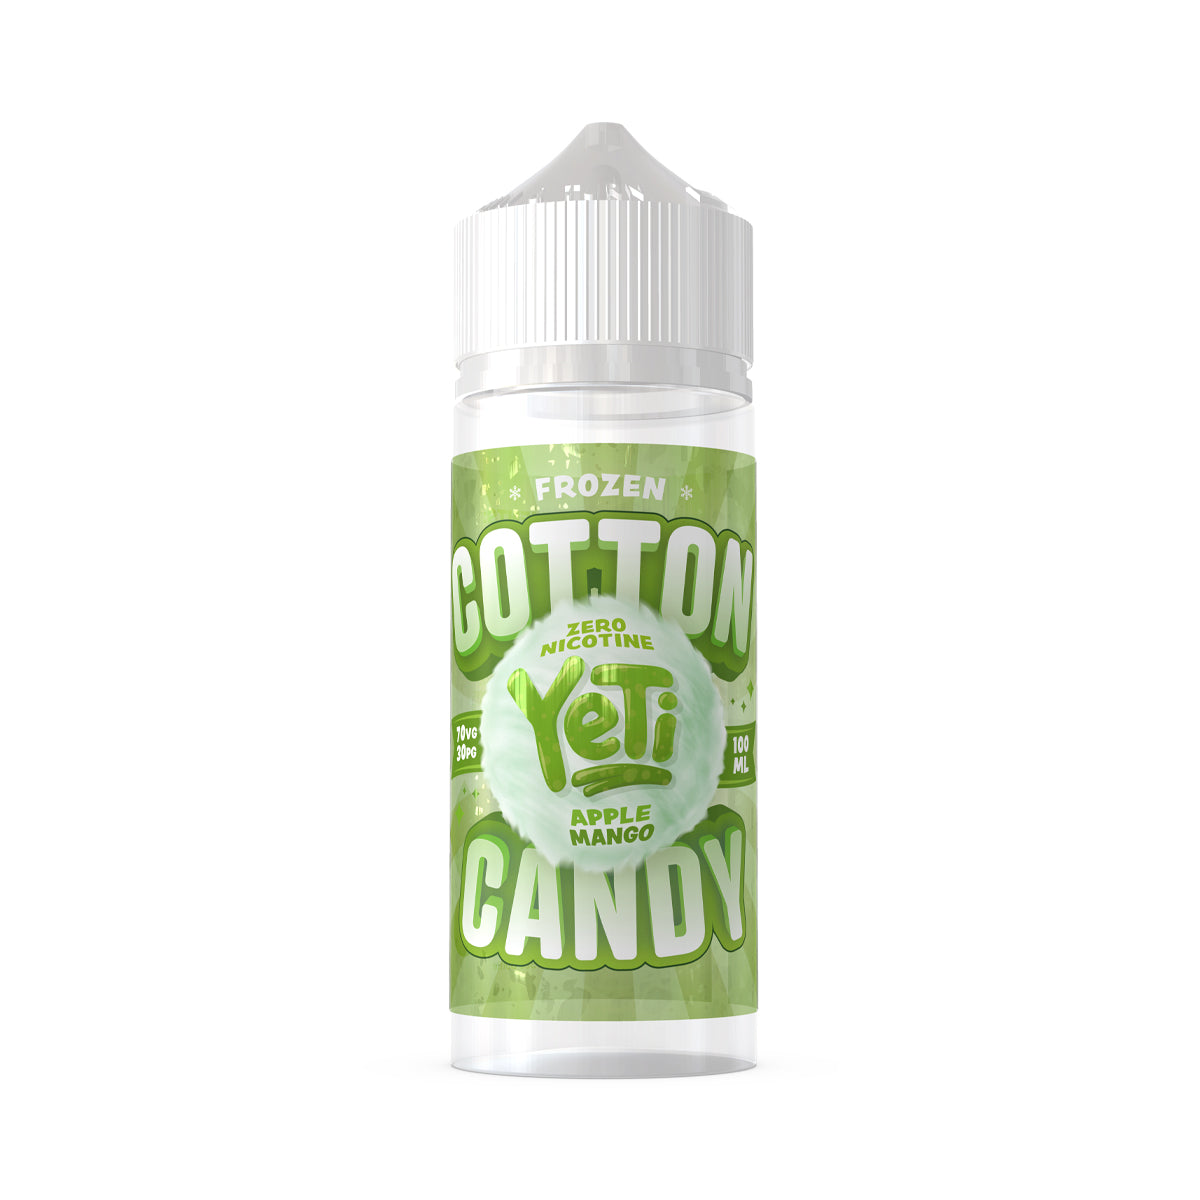 YeTi Cotton Candy - Apple Mango 100ml